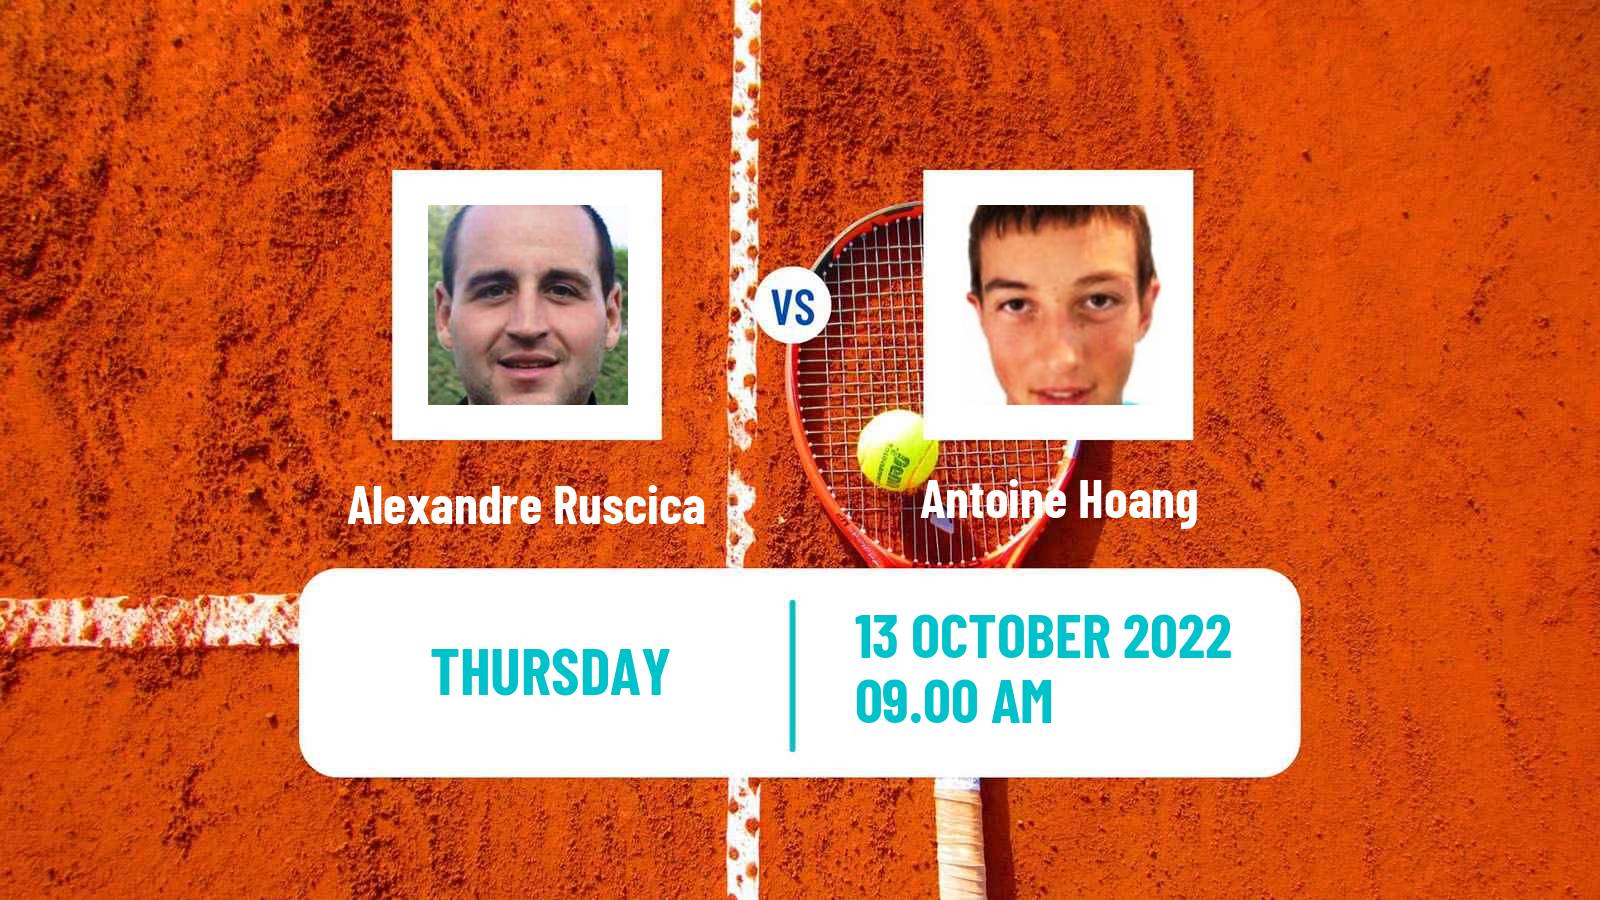 Tennis ITF Tournaments Alexandre Ruscica - Antoine Hoang